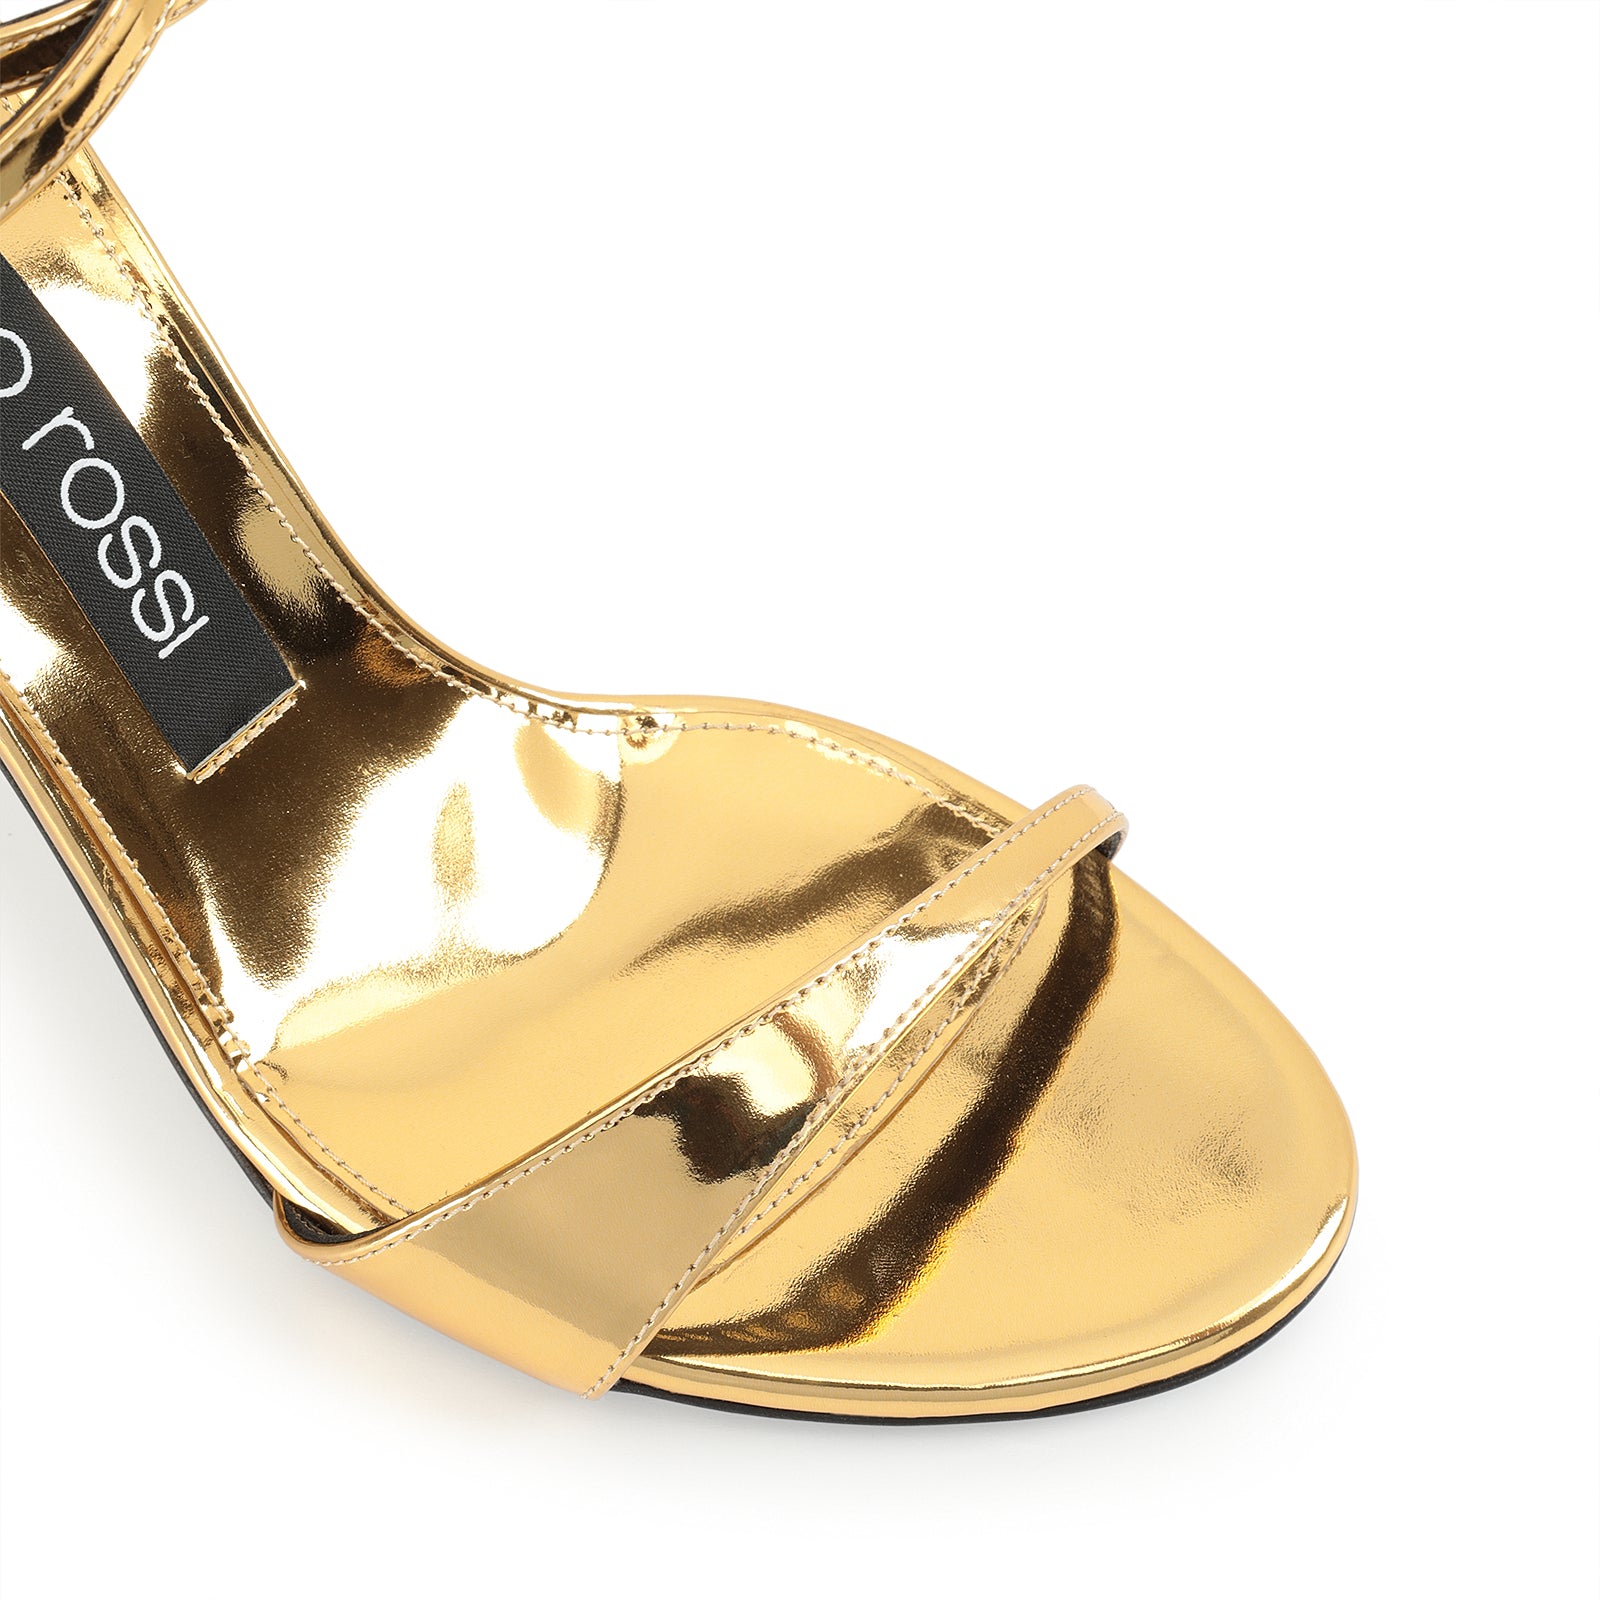 Godiva 90 heeled sandals - Argento